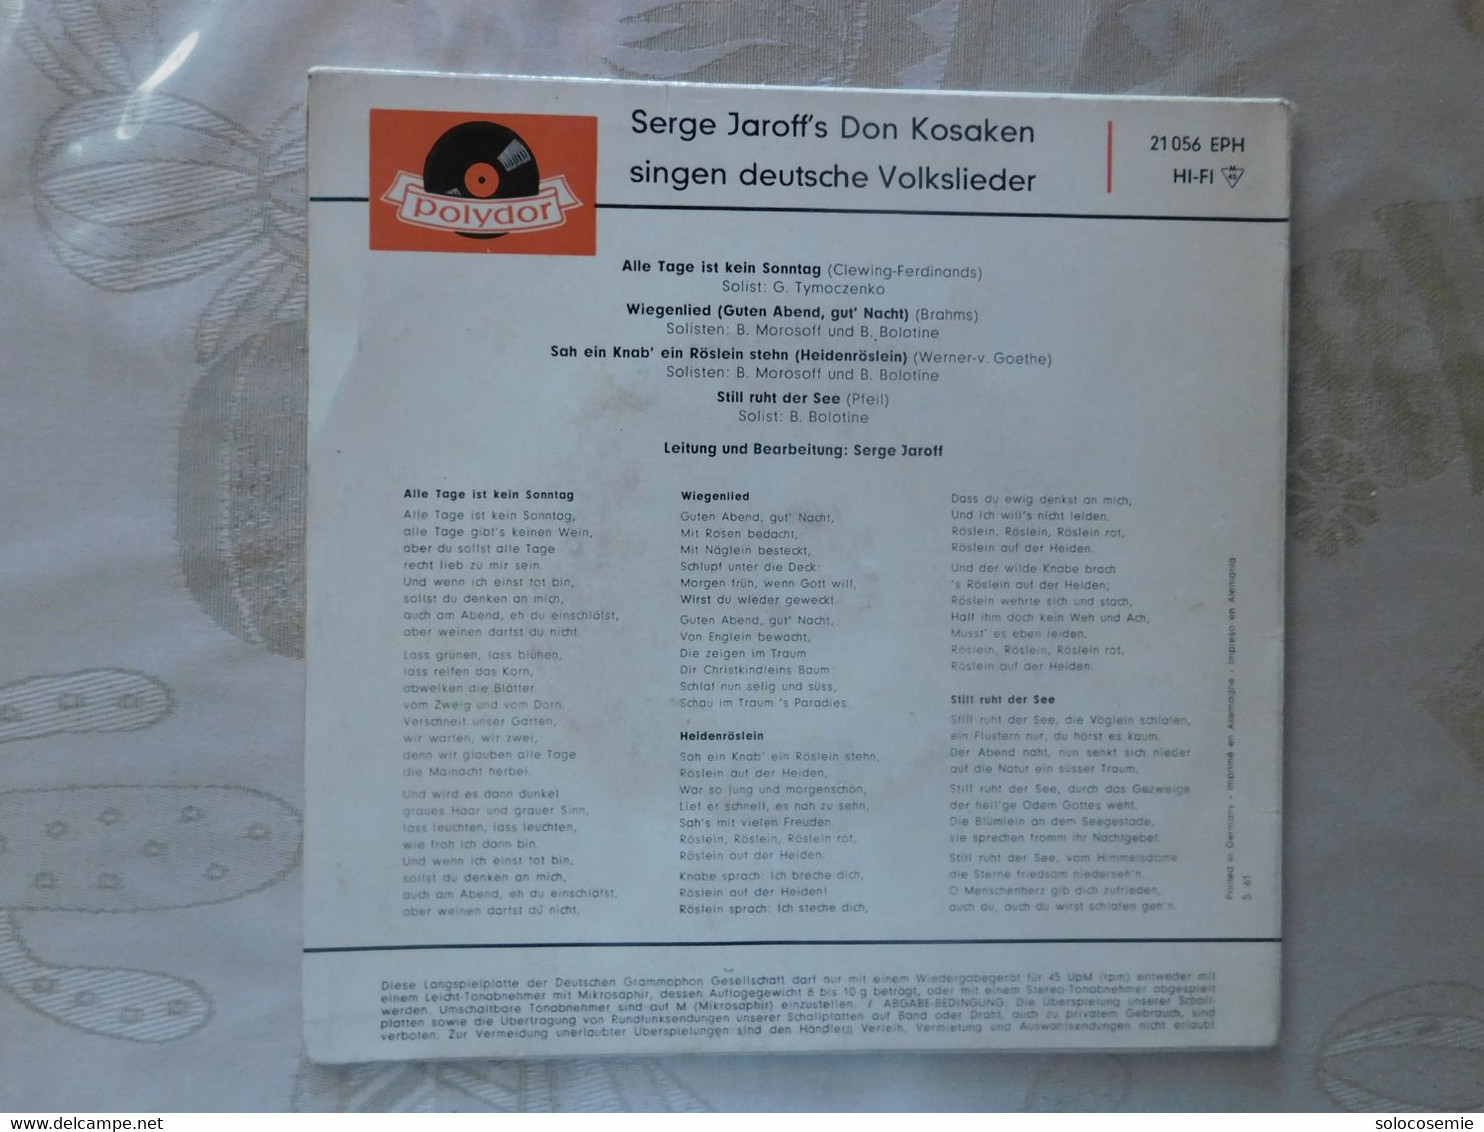 45 Giri Disco In Vinile: Serge Jaroff's Don Kosaken Singen Deutsche Volksilieder  - Polydor  21056 EPH - Other - German Music